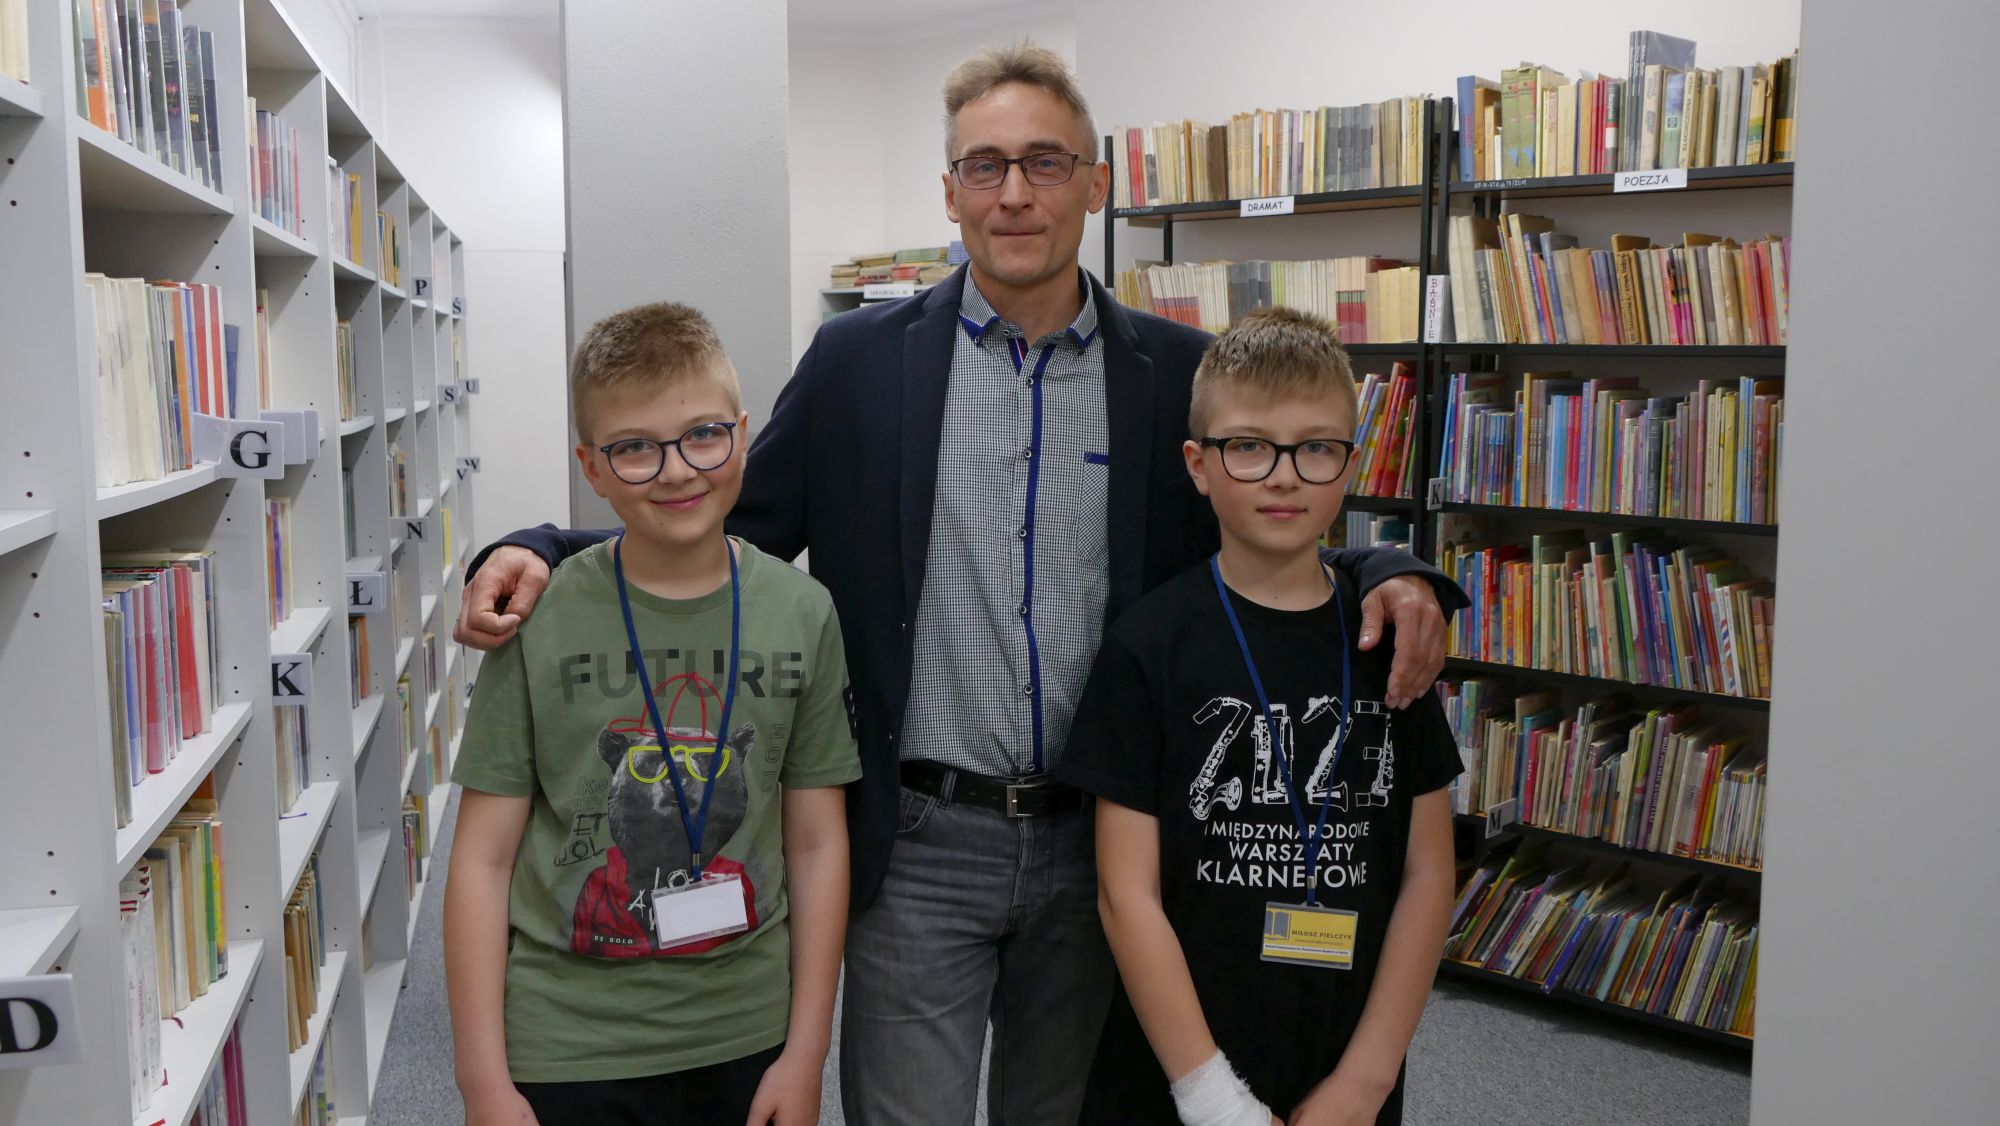 Karol i Miłosz Pielczykowie w towarzystwie Arkadiusza Mroza, od którego otrzymali identyfikatory z tytułem: "Pomocnik bibliotekarza"